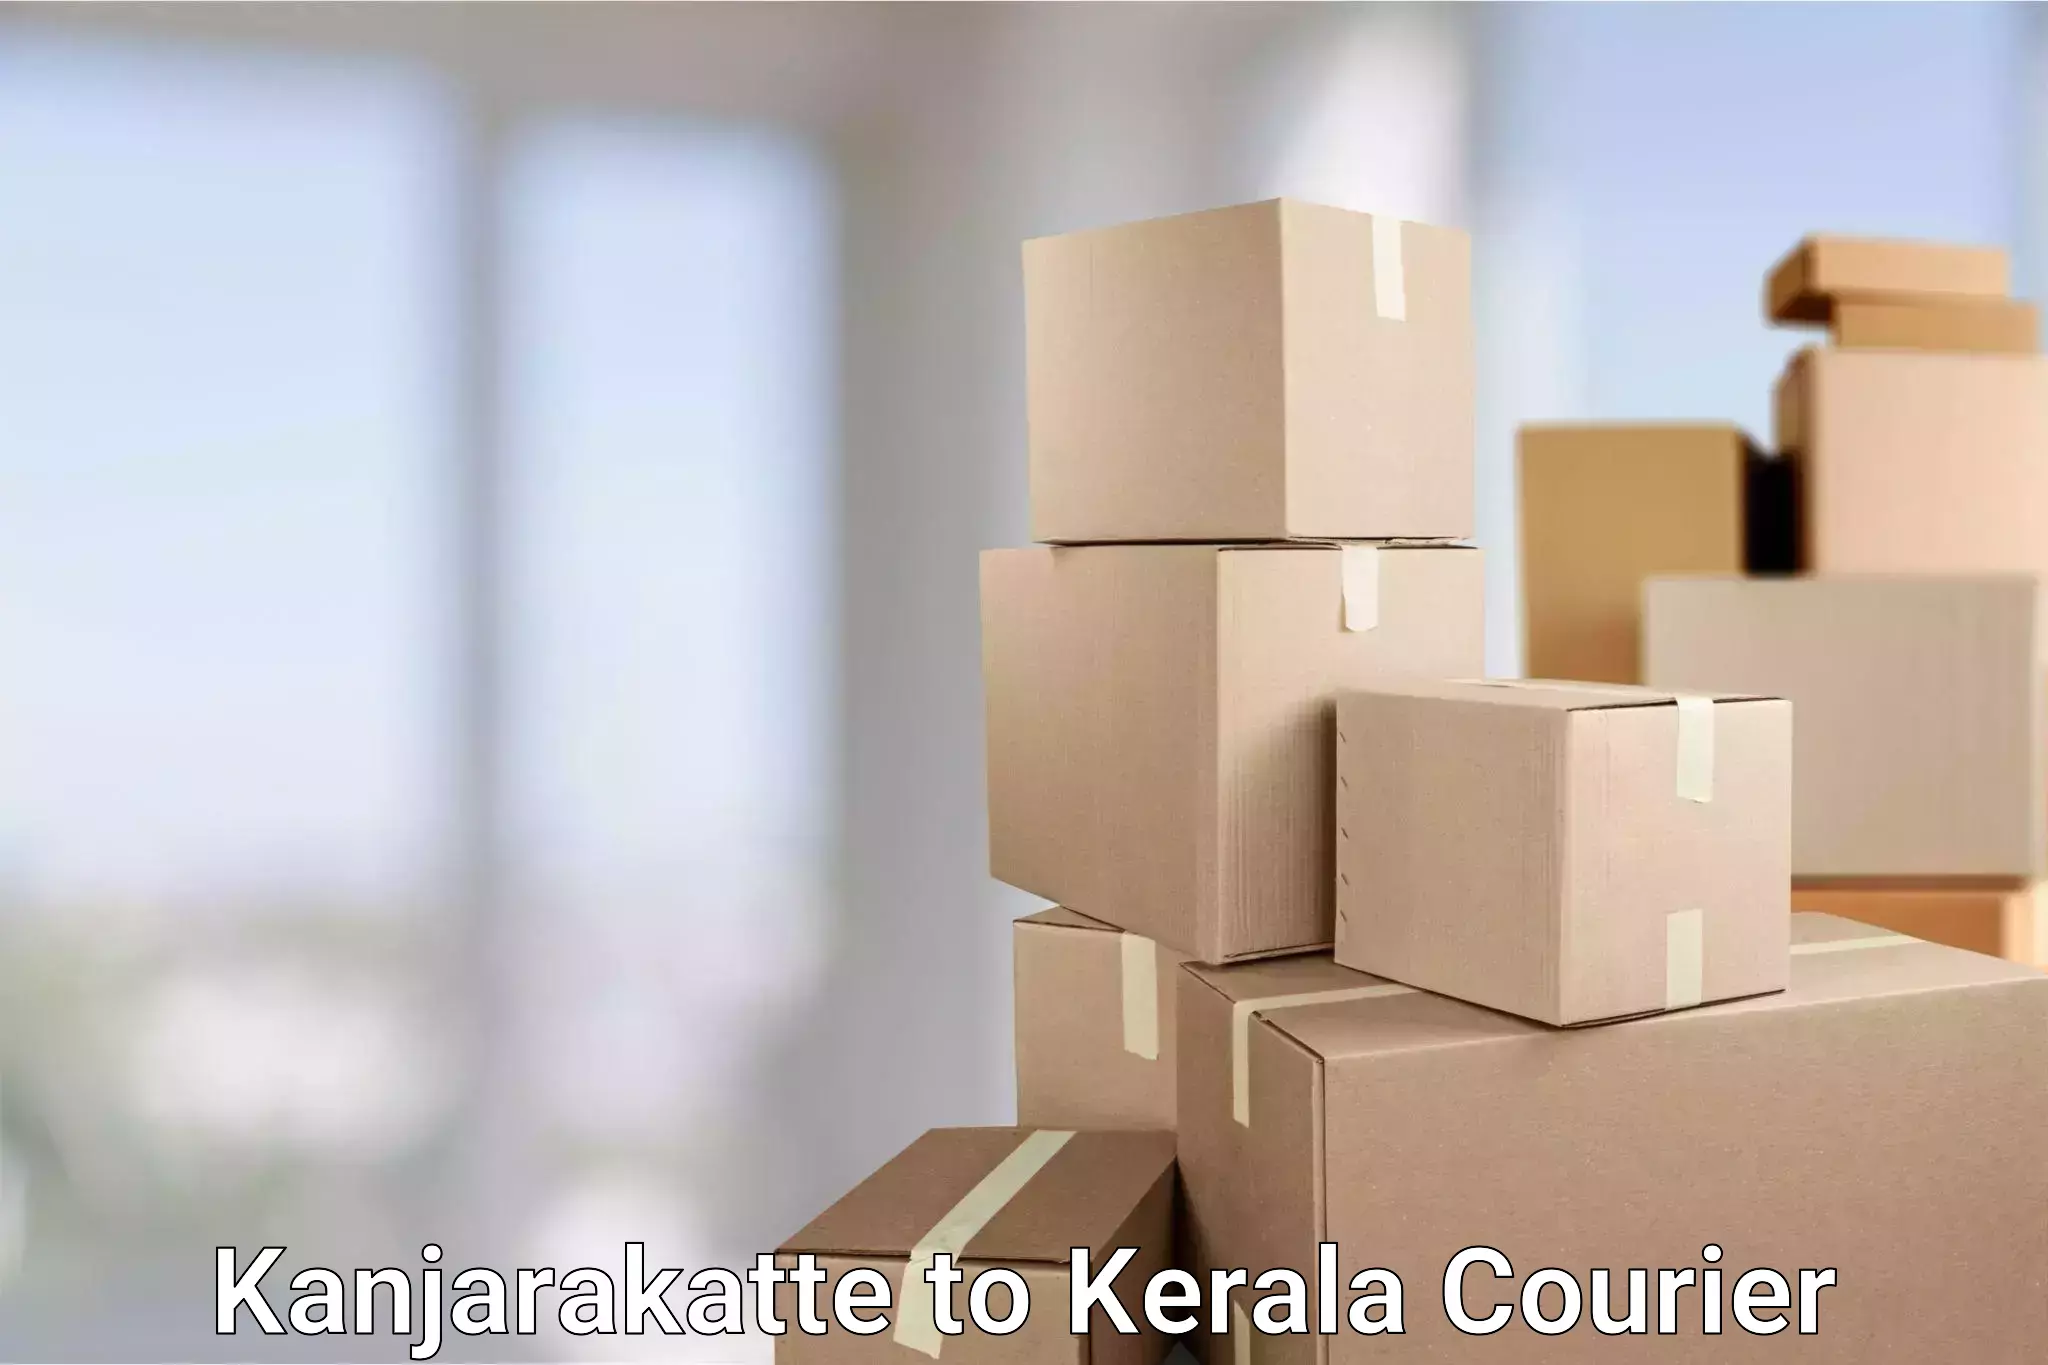 Efficient cargo services Kanjarakatte to Kiliyanthara